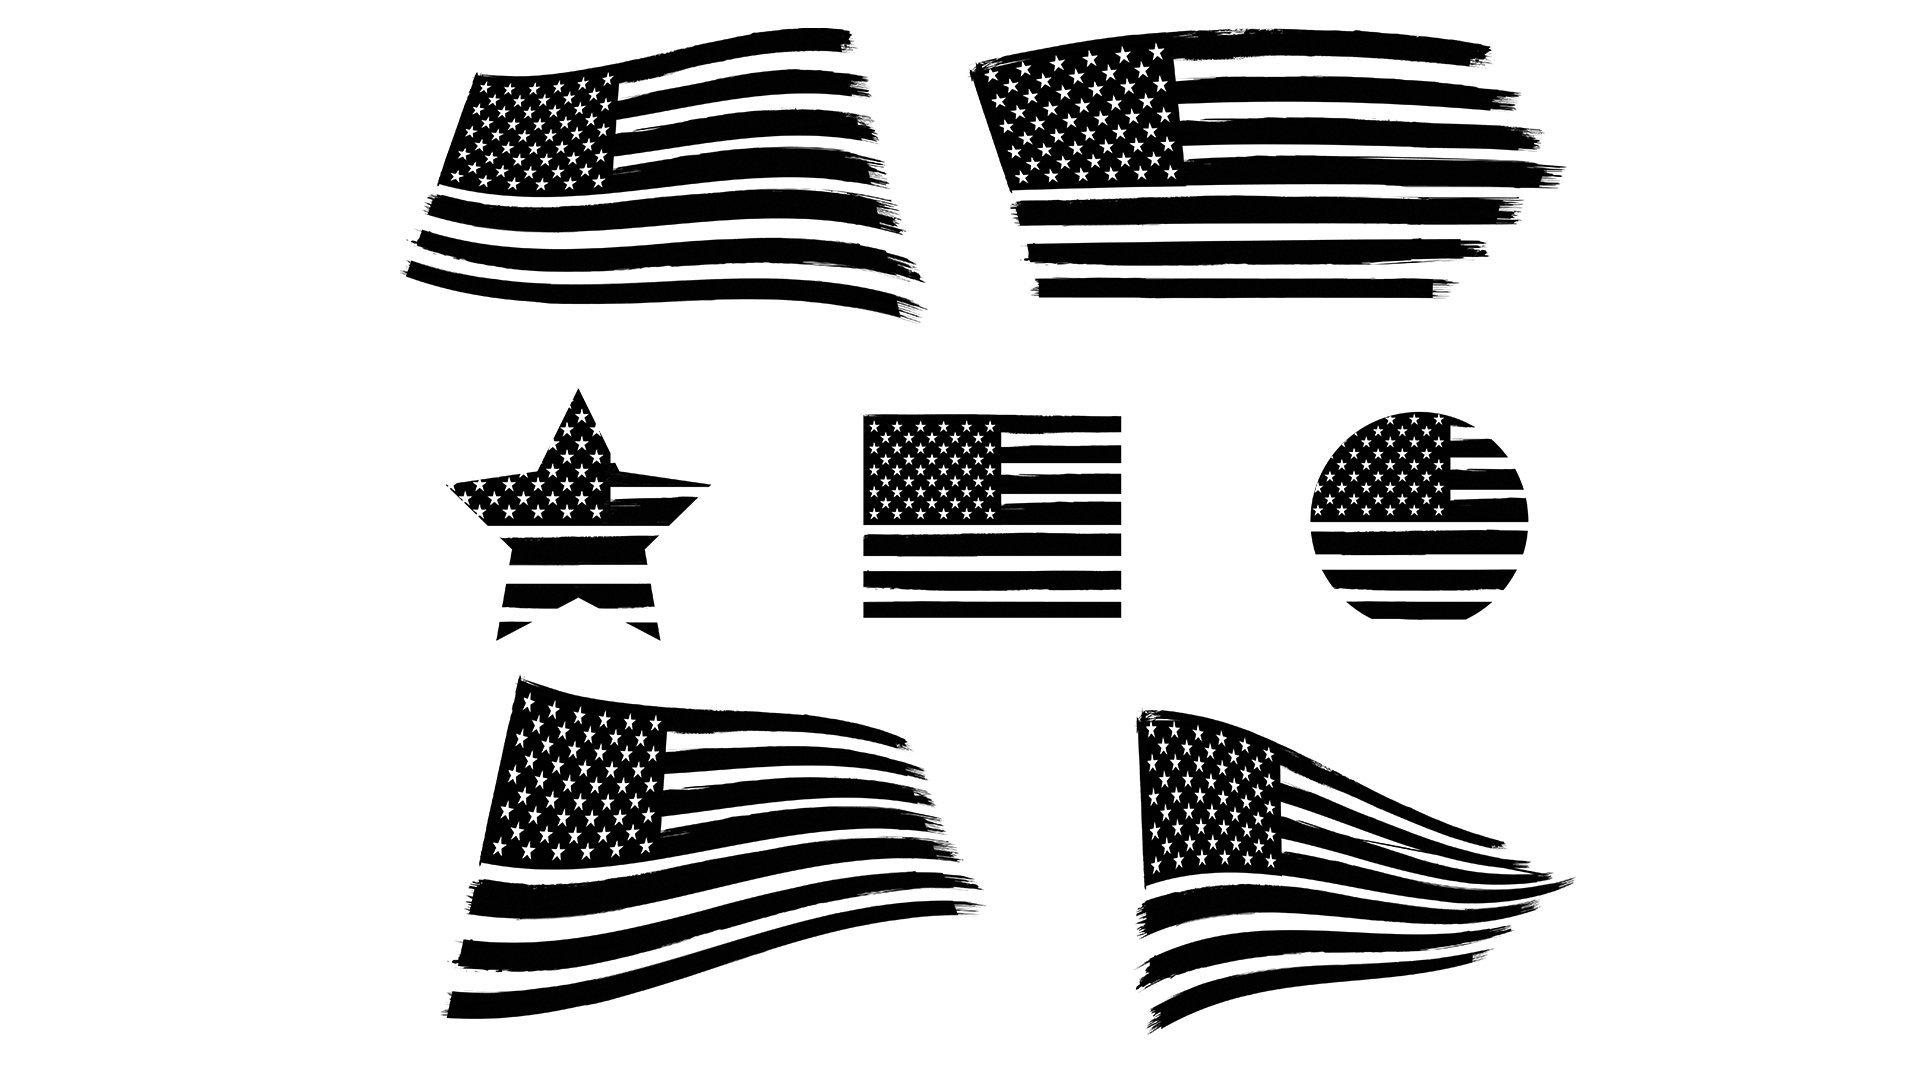 Distressed American Flag by GeorgeKhelashvili on Dribbble